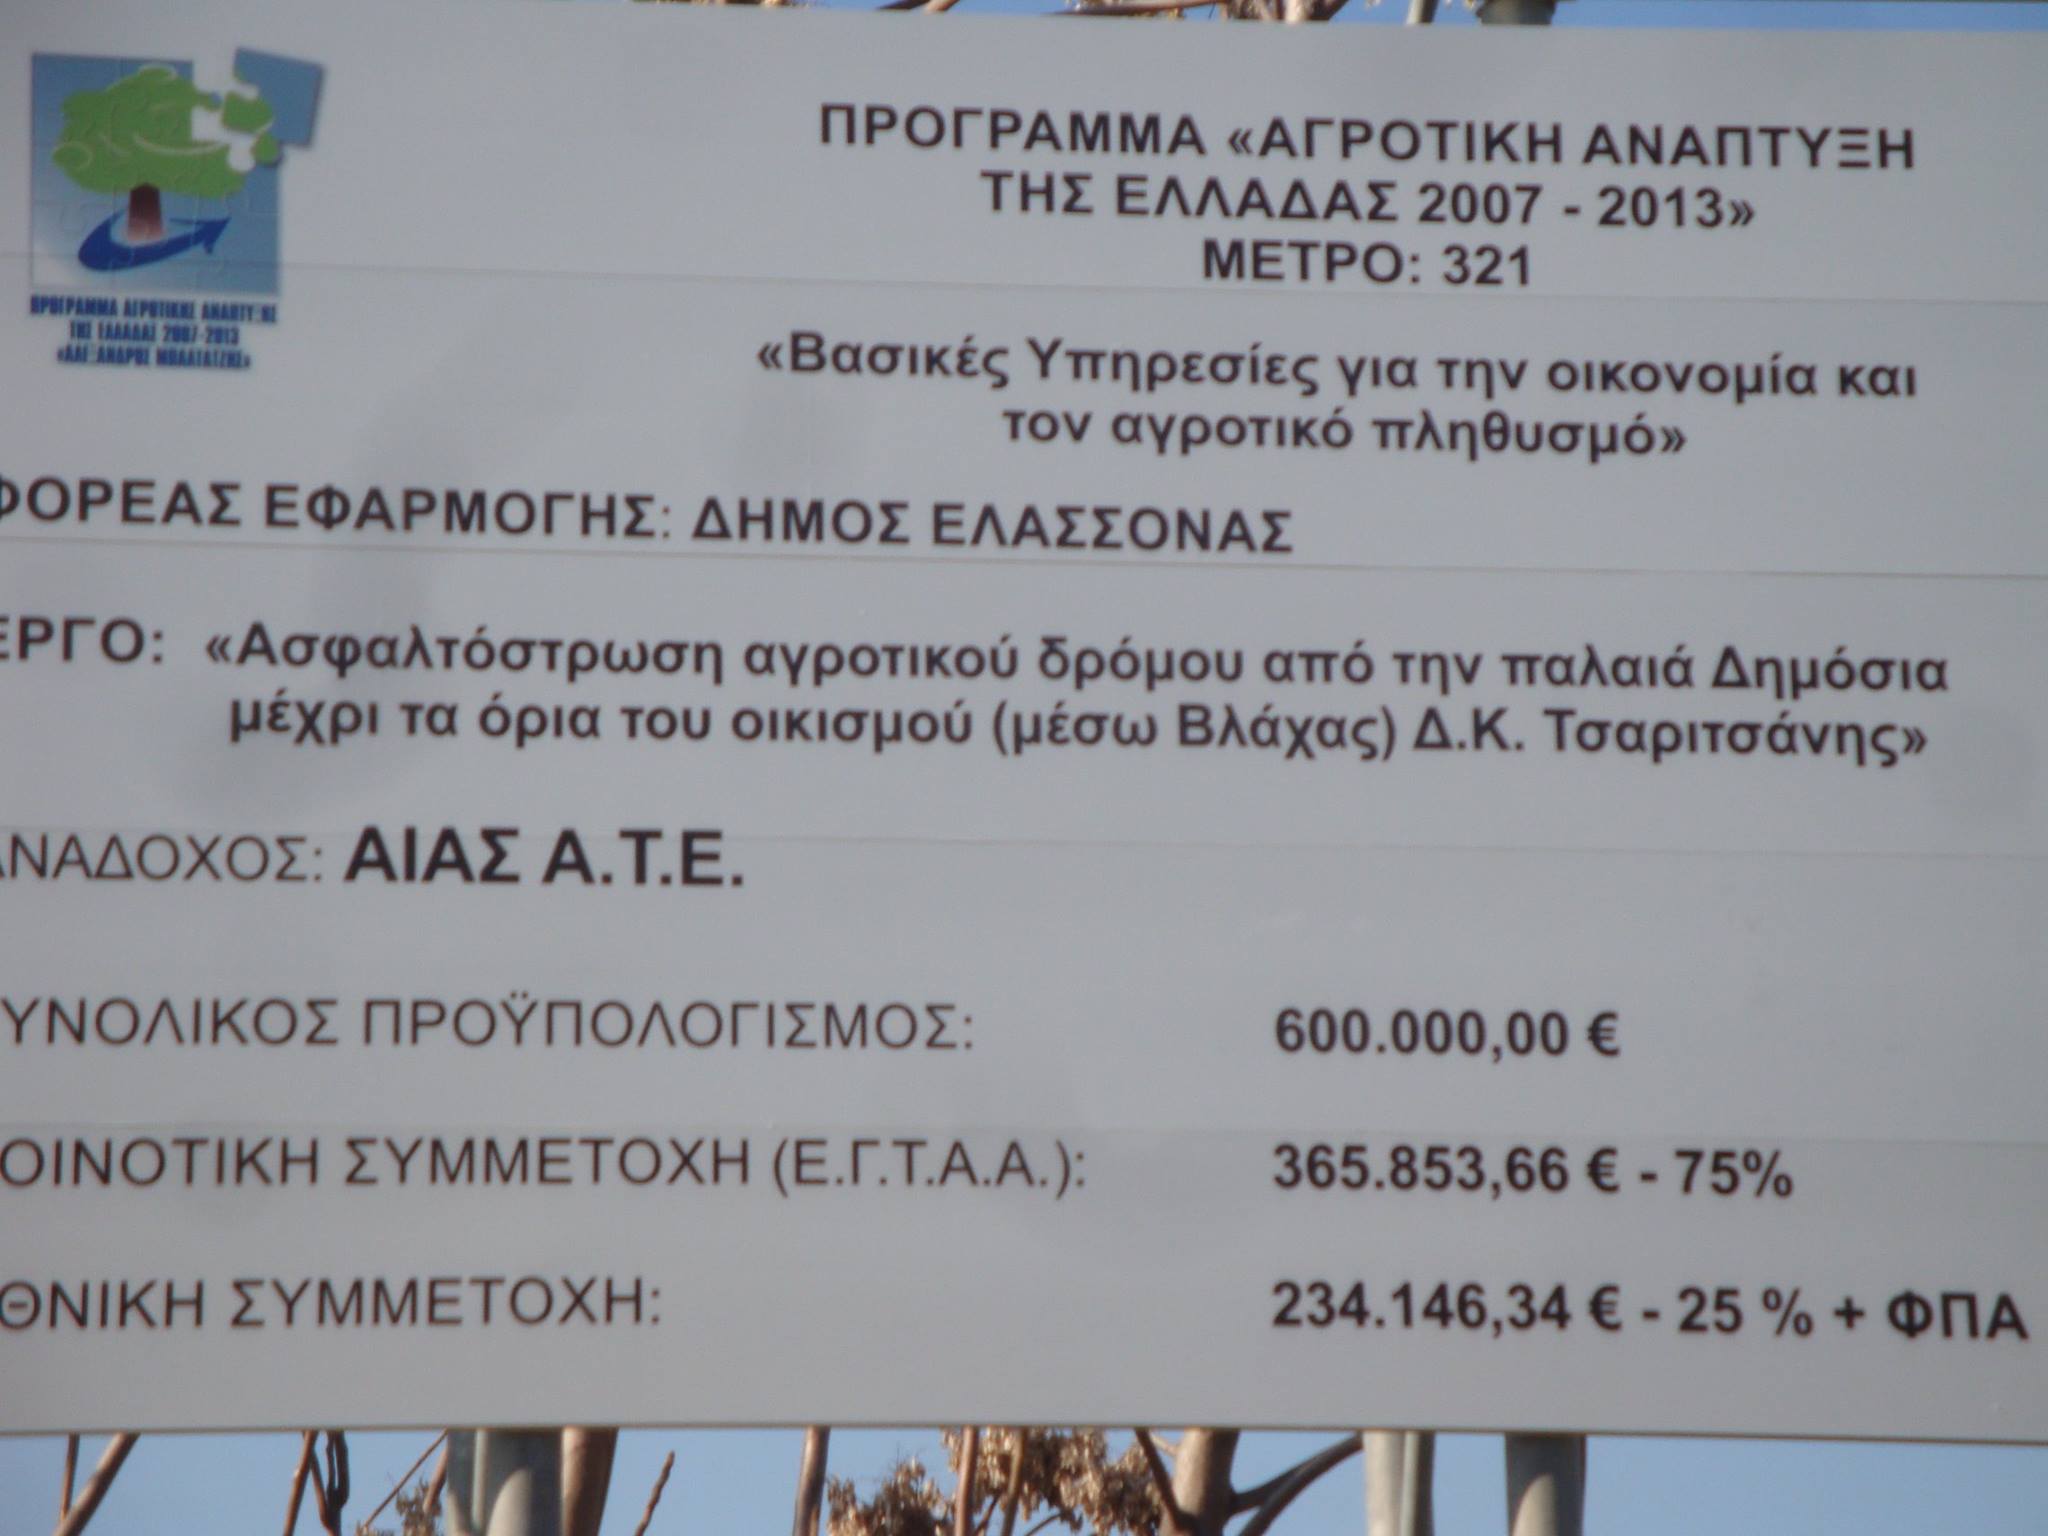 “600.000 ευρώ για 1.300 μέτρα αγροτικού δρόμου;” (FB)